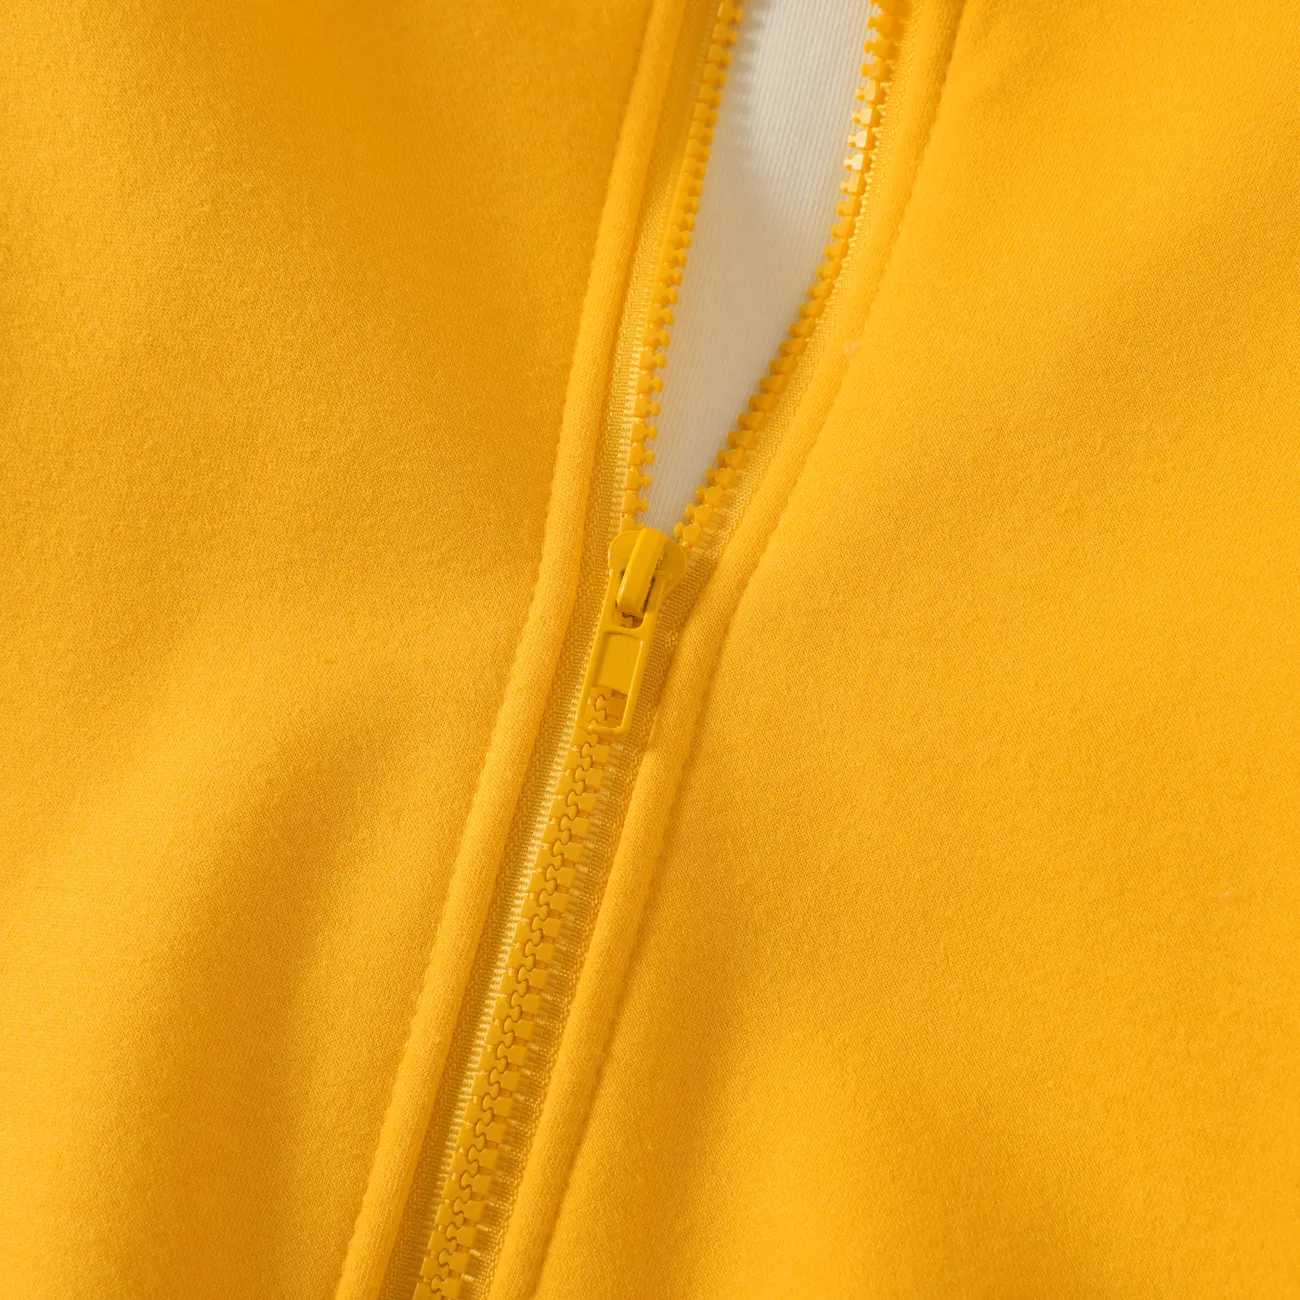 Kid Boy/Kid Girl Fleece Lined Zipper Hooded Jacket Sweatshirt Yellow big image 1